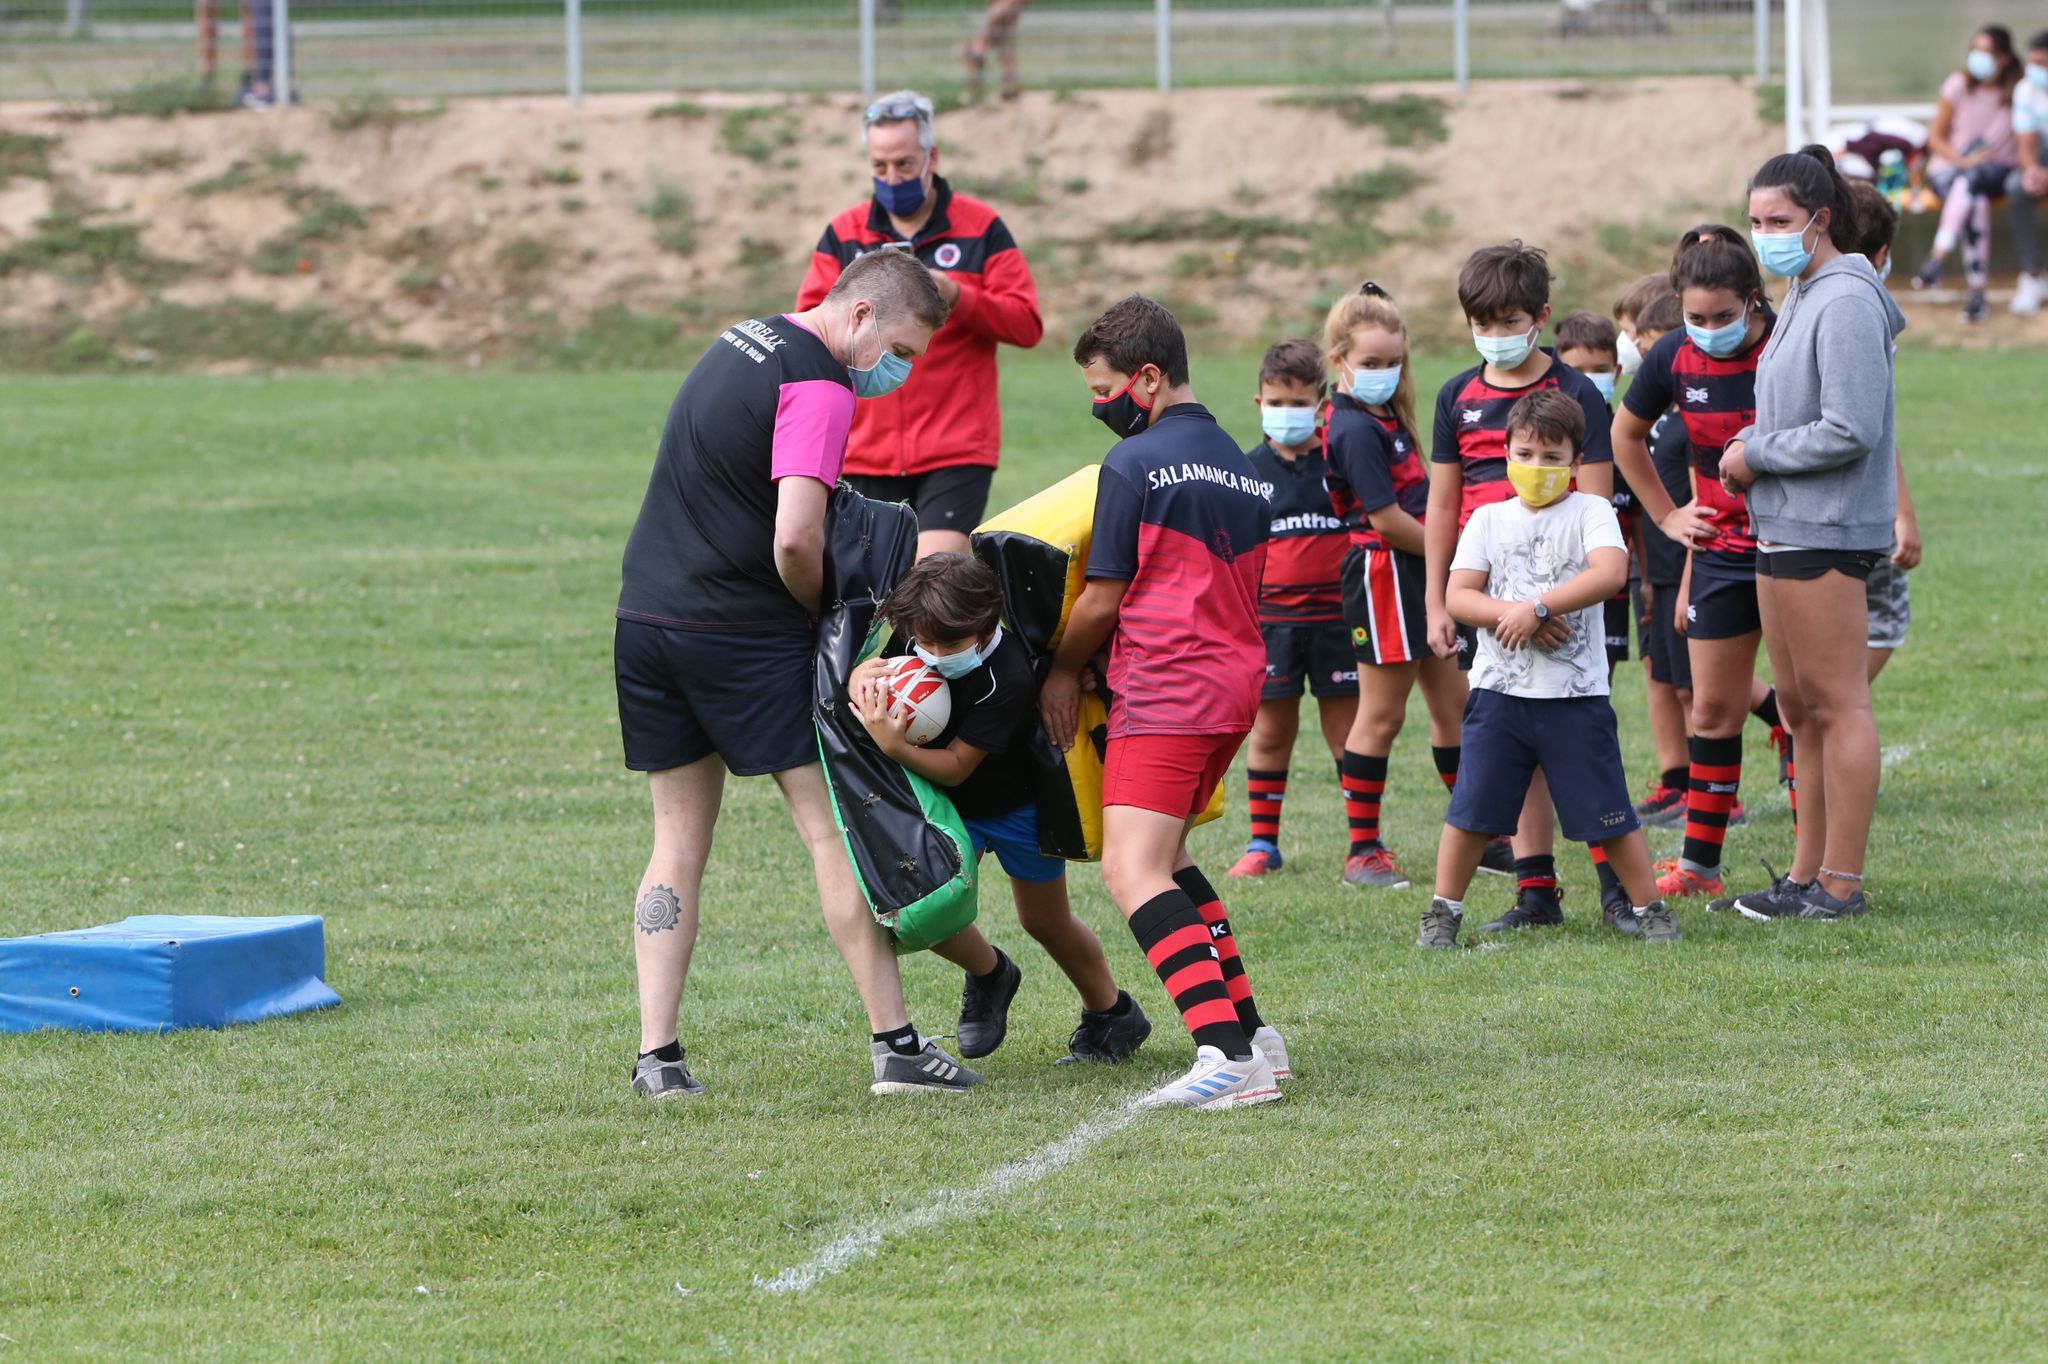 Imagen de la jornada de iniciación al rugby / FOTO SALAMANCA24HORAS.COM